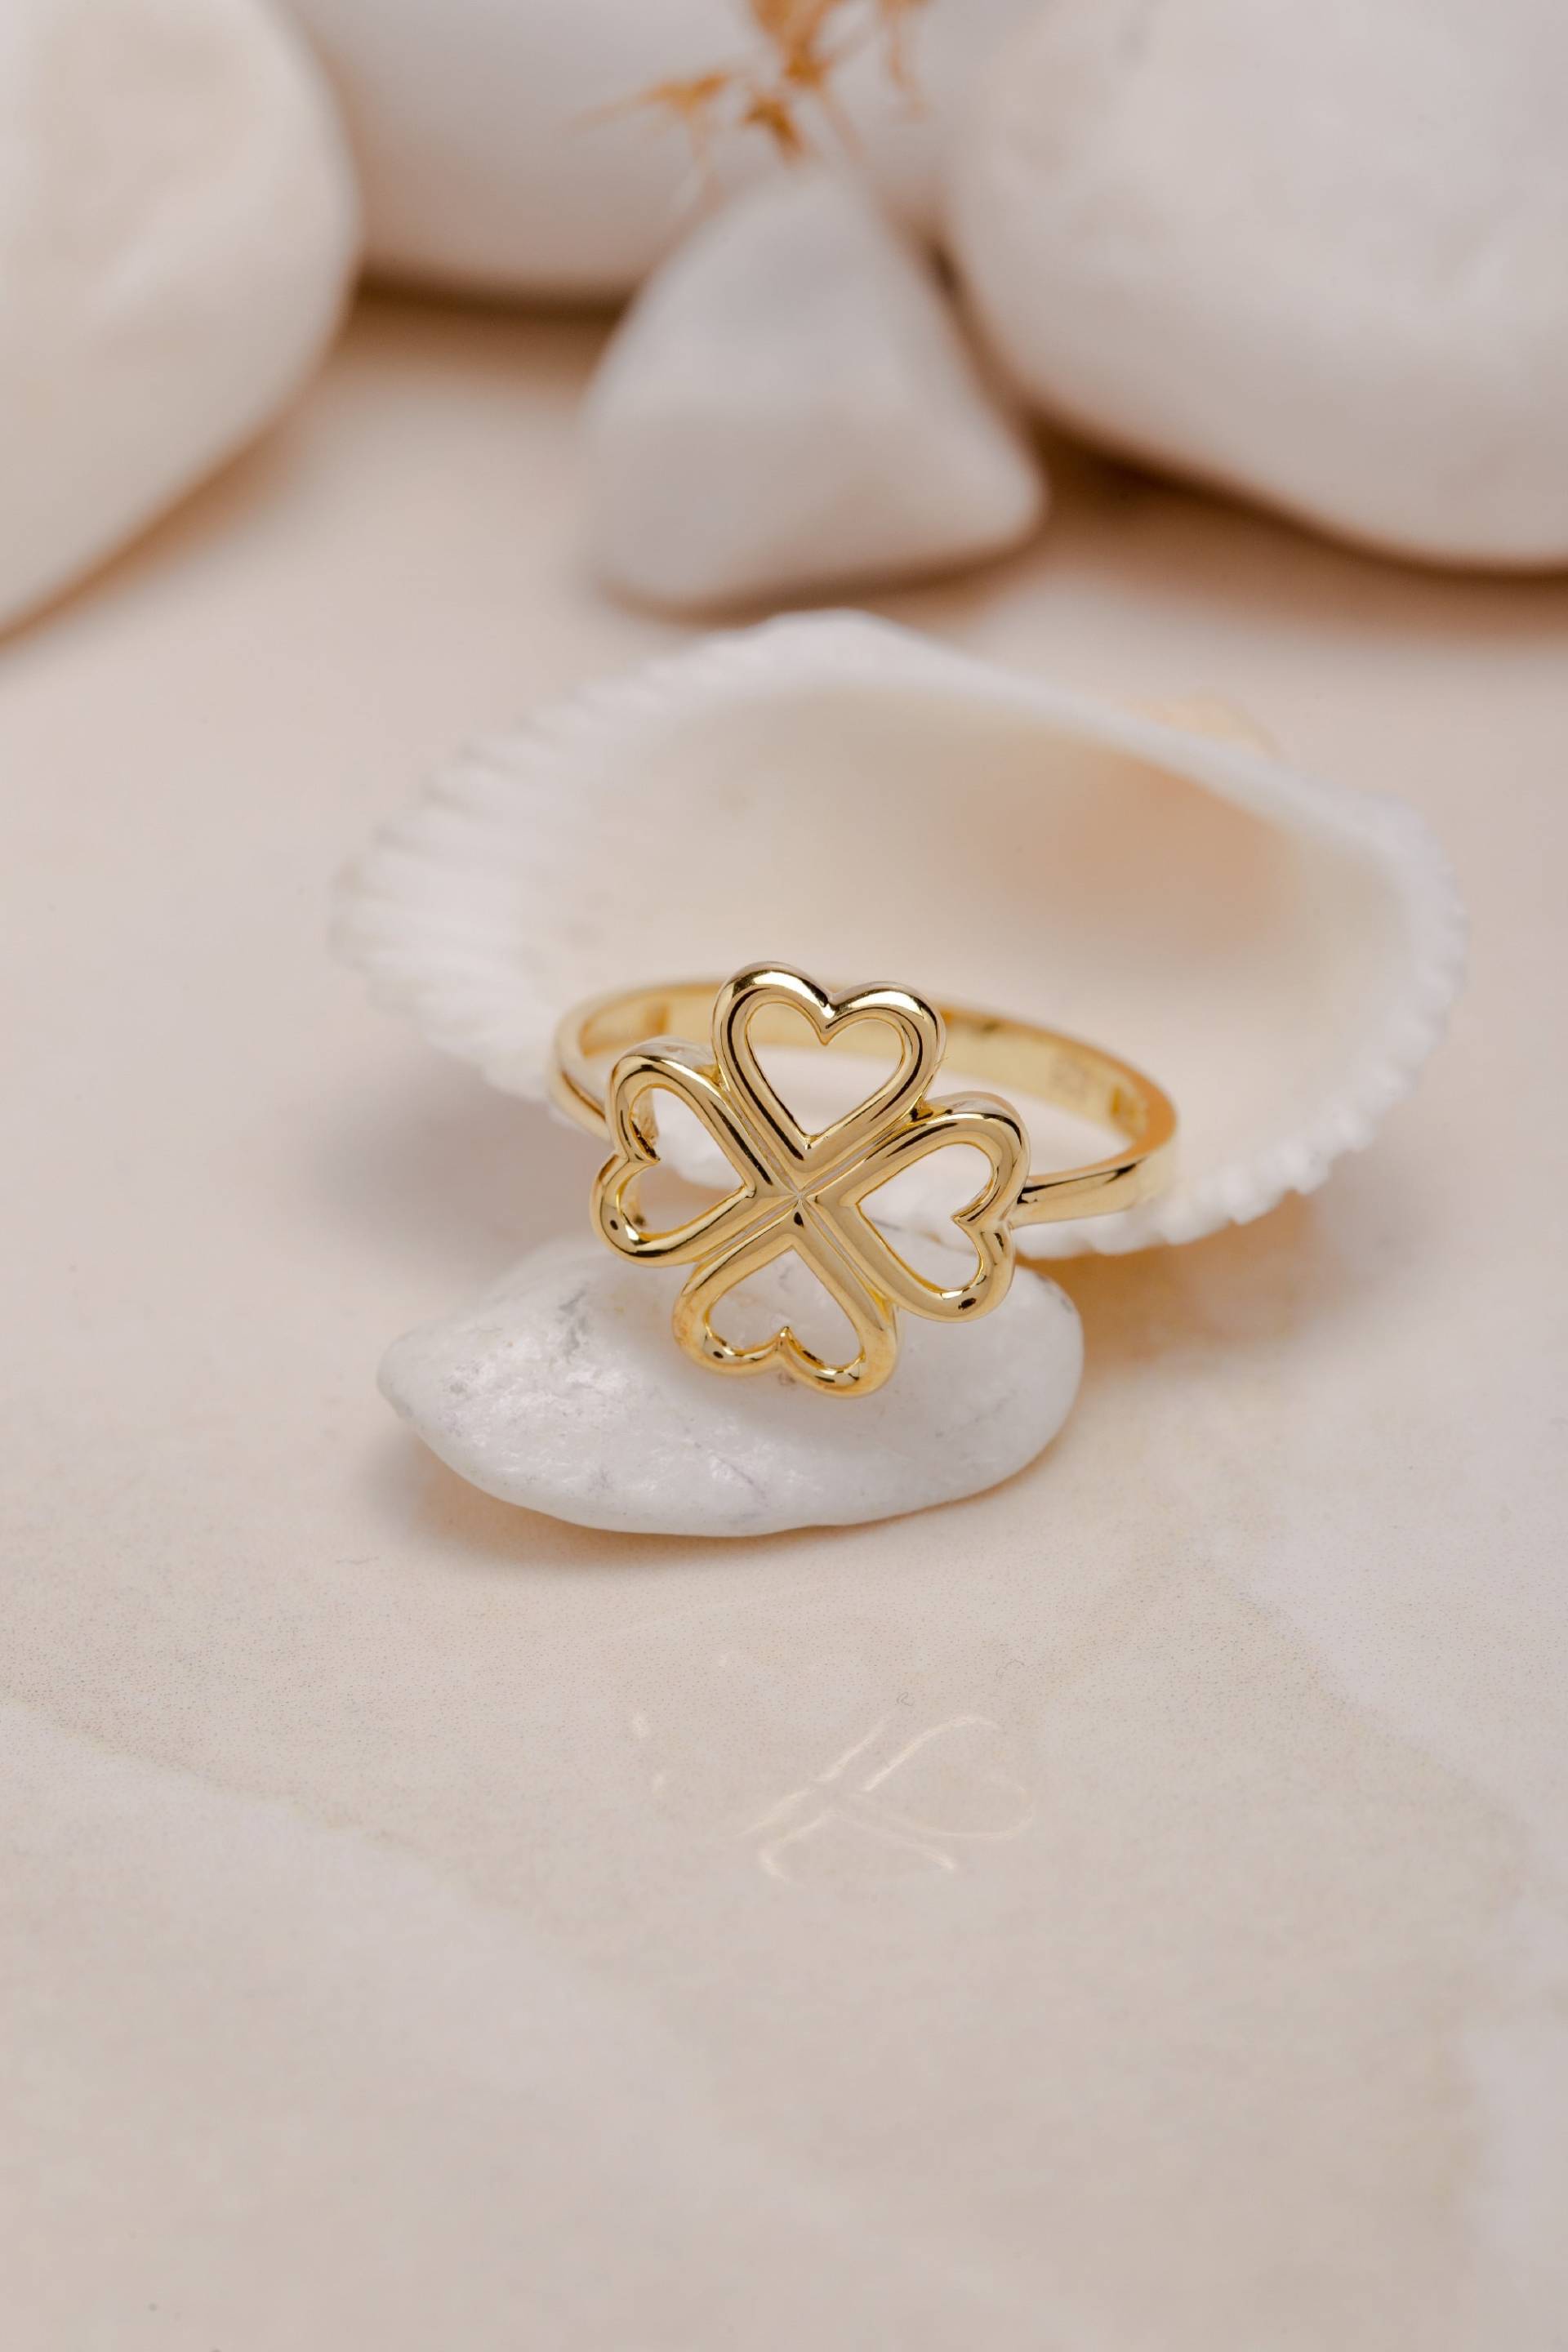 Vierblättriges Kleeblatt Ring, Handgemachter Schmuck Für Glück, Handwerklich Gefertigte Glücksbringer Geschenk Zum Muttertag von BexJewelryUSA